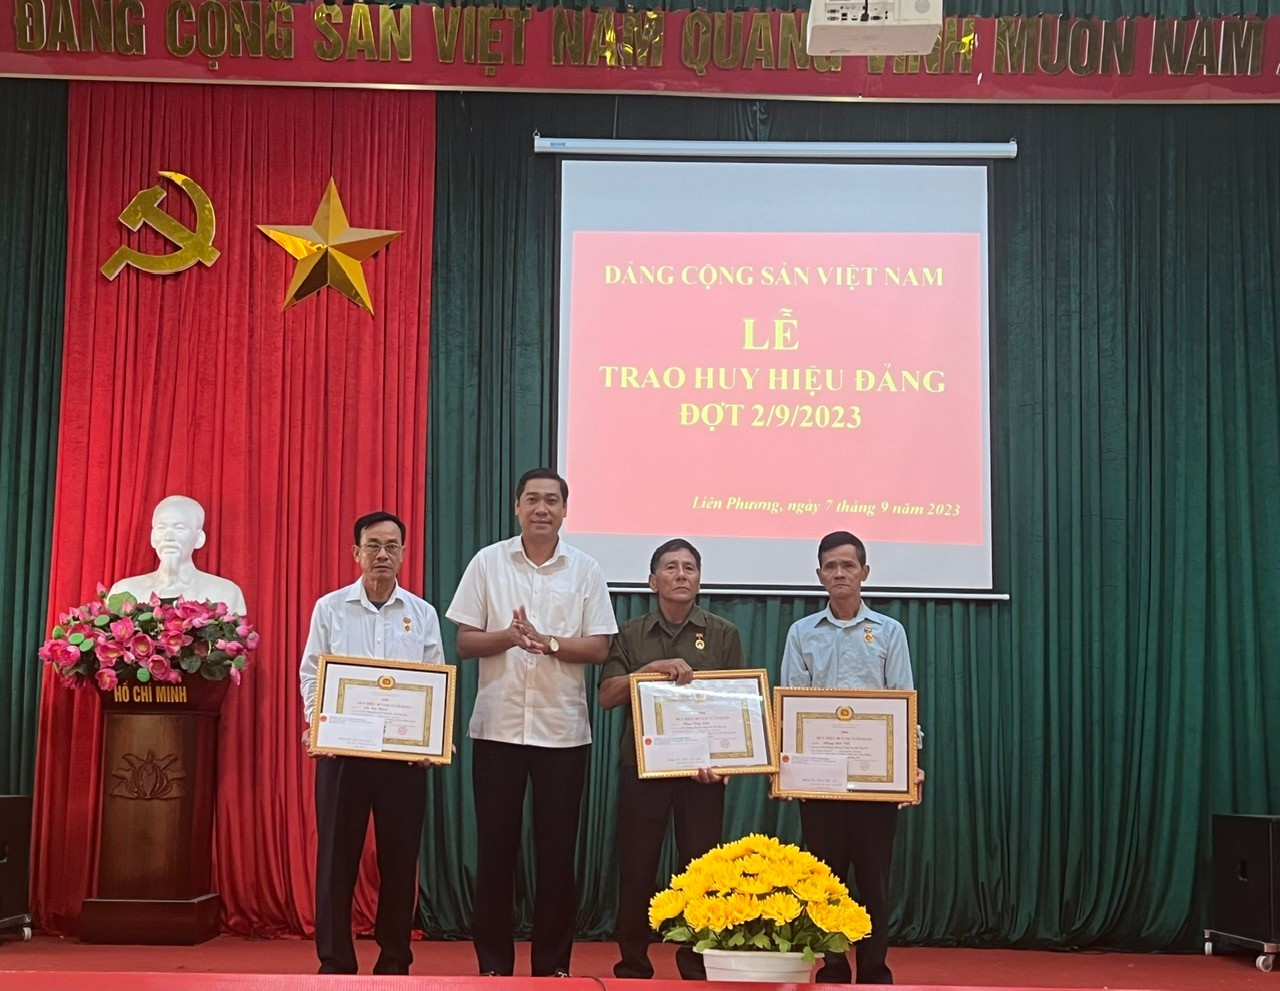 Đồng chí Lương Công Chanh - Phó Bí thư Thường trực Thành ủy  trao Huy hiệu Đảng đợt 2/9 tại Đảng bộ xã Liên Phương